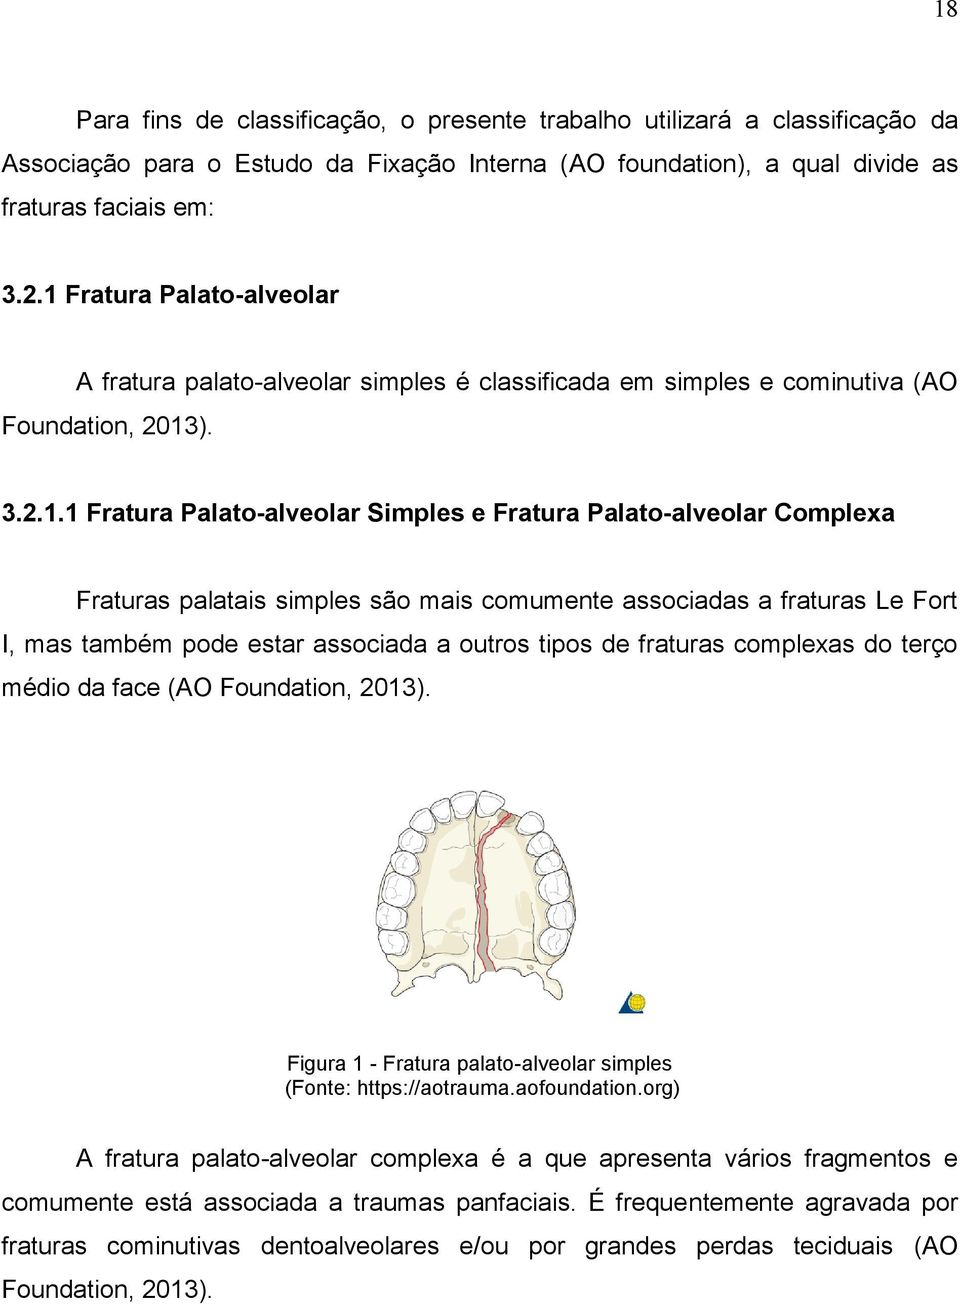 Fraturas palatais simples são mais comumente associadas a fraturas Le Fort I, mas também pode estar associada a outros tipos de fraturas complexas do terço médio da face (AO Foundation, 2013).